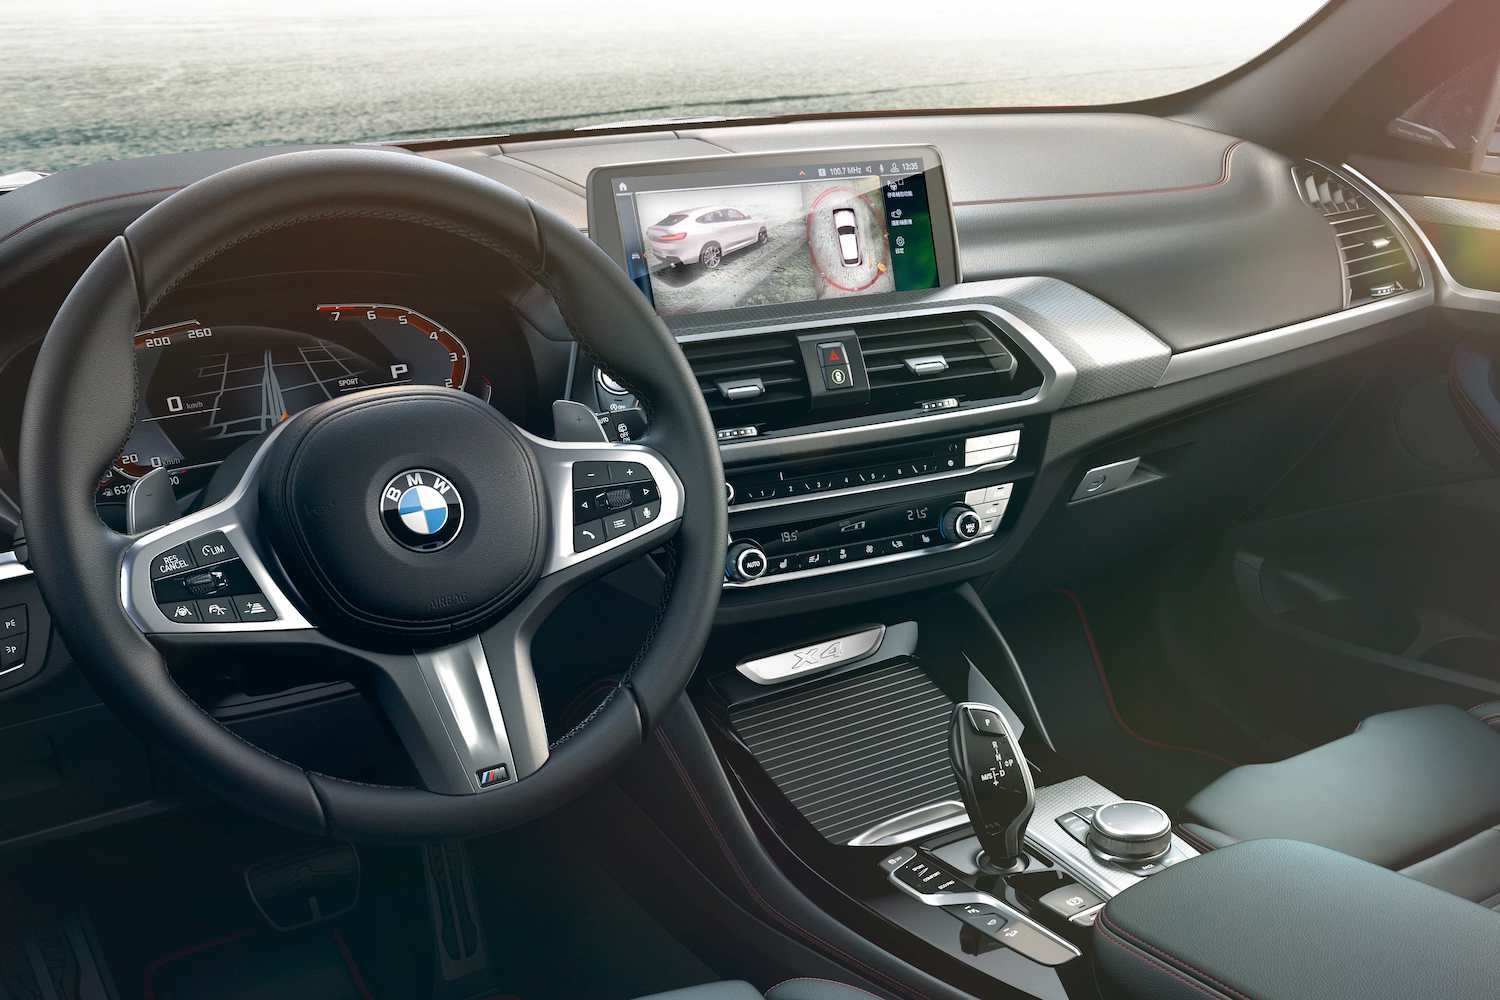 2020 年式全新 BMW X3、X4 升級搭載 360 度環景輔助攝影與遠端 3D 監控。